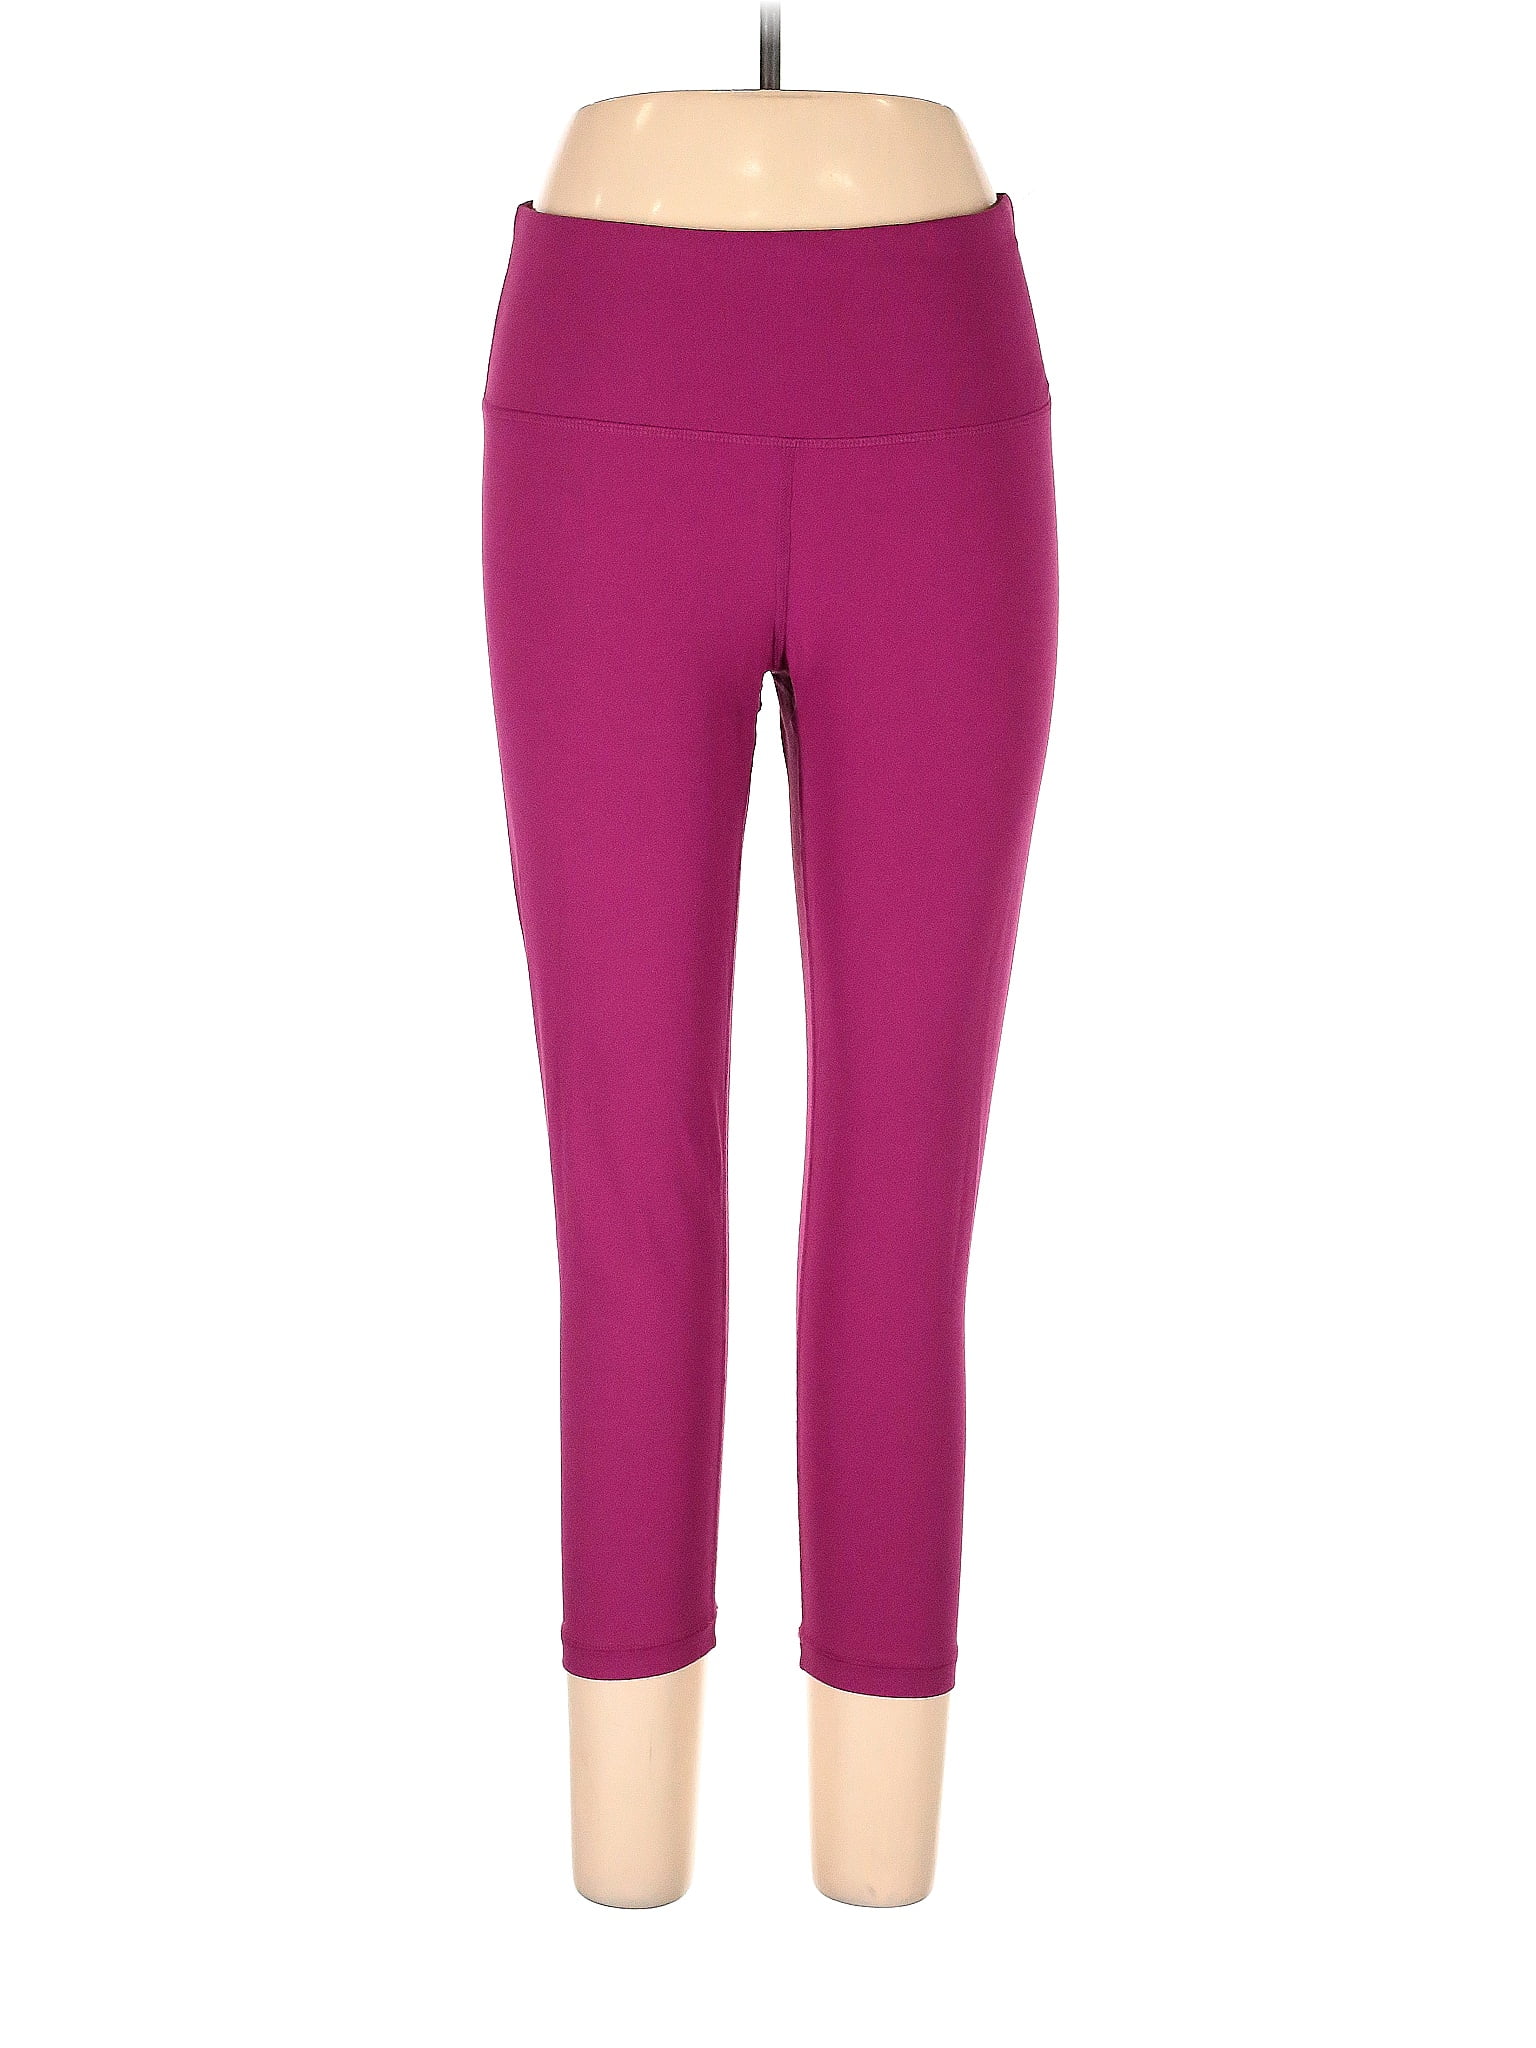 Yogalicious Purple Active Pants Size XL - 56% off